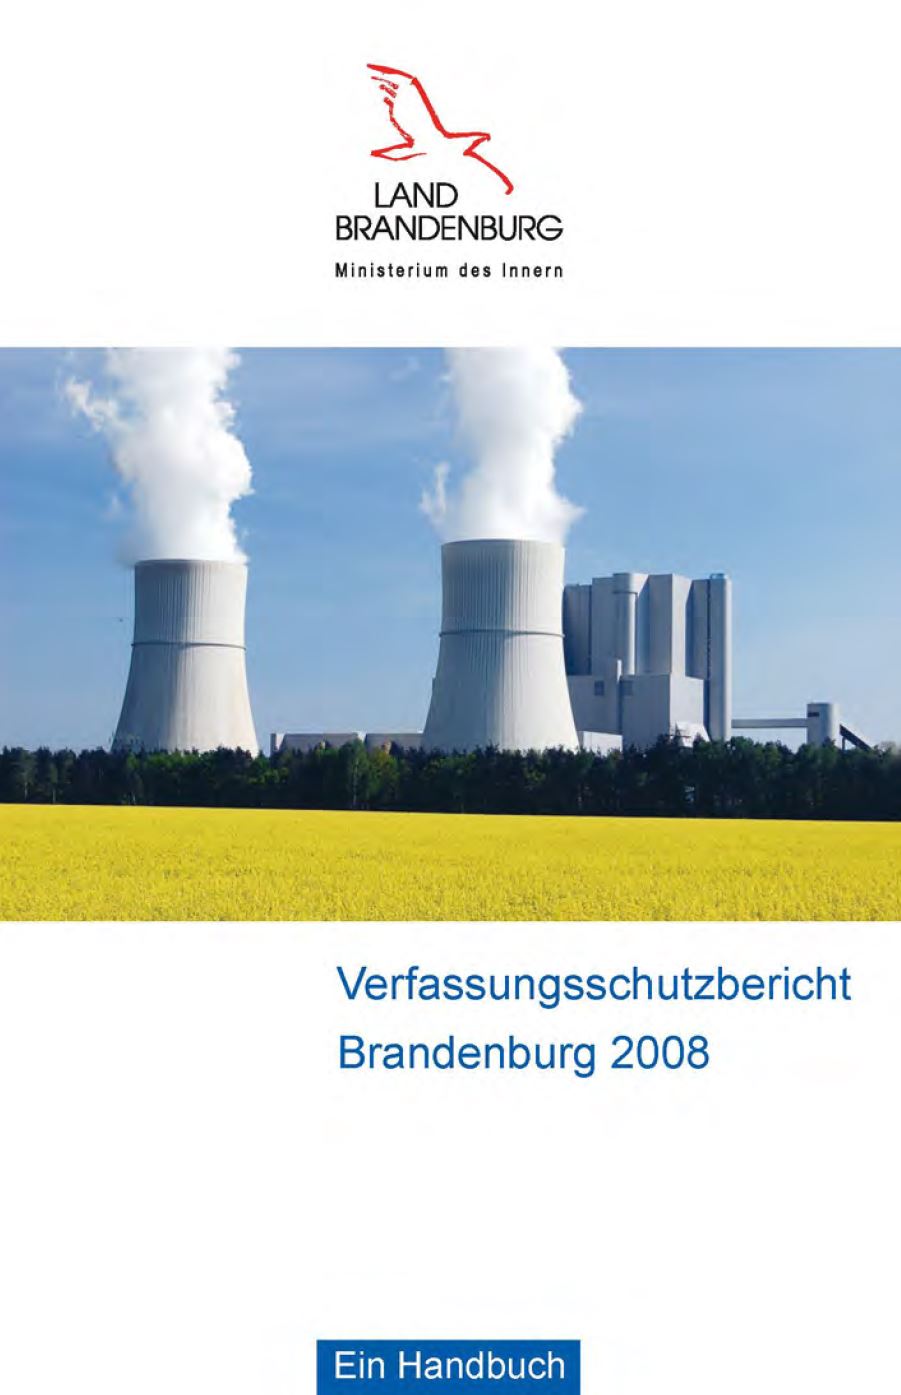 Bild vergrößern (Bild: Verfassungsschutzbericht 2008)